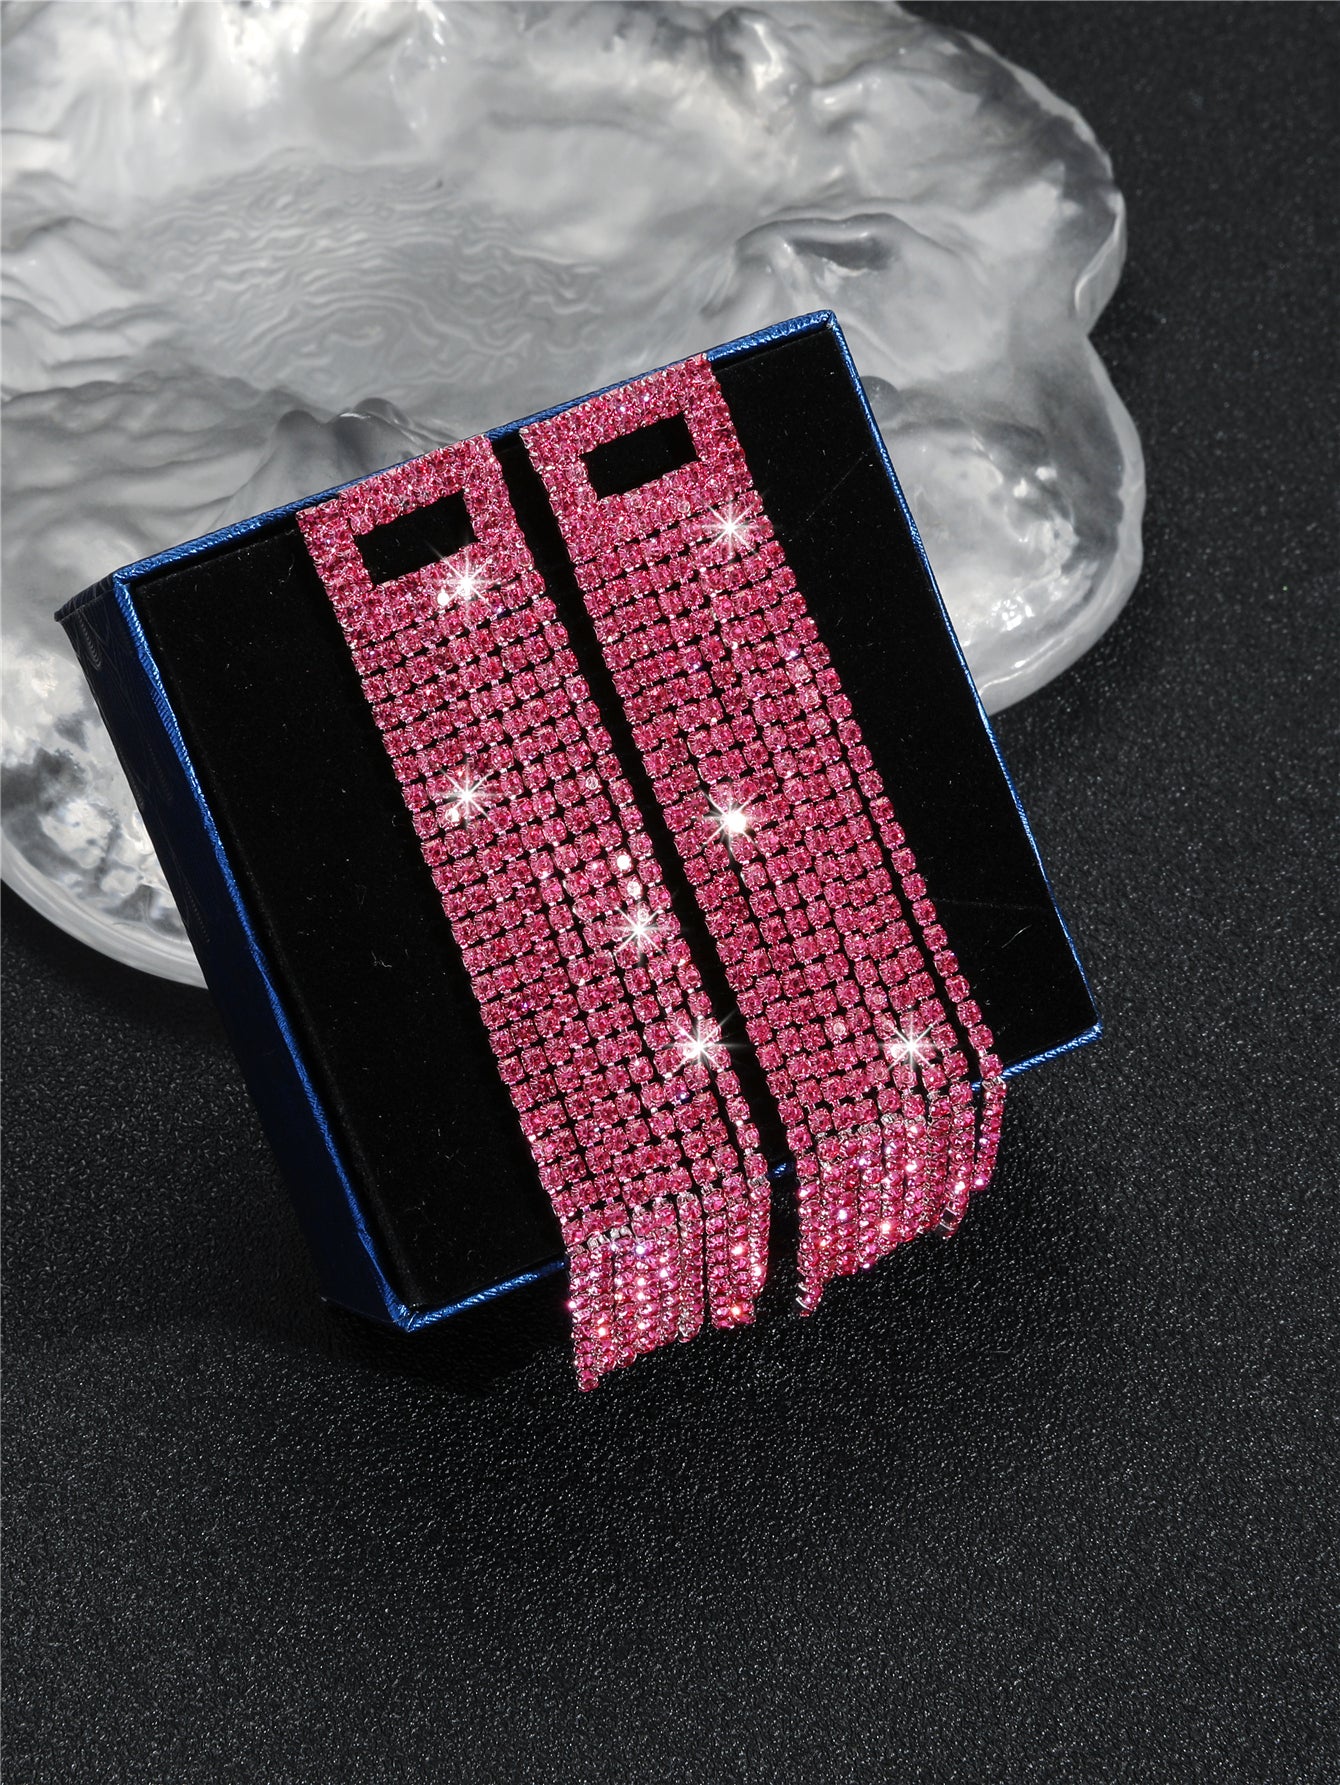 Long earrings with pink rhinestones